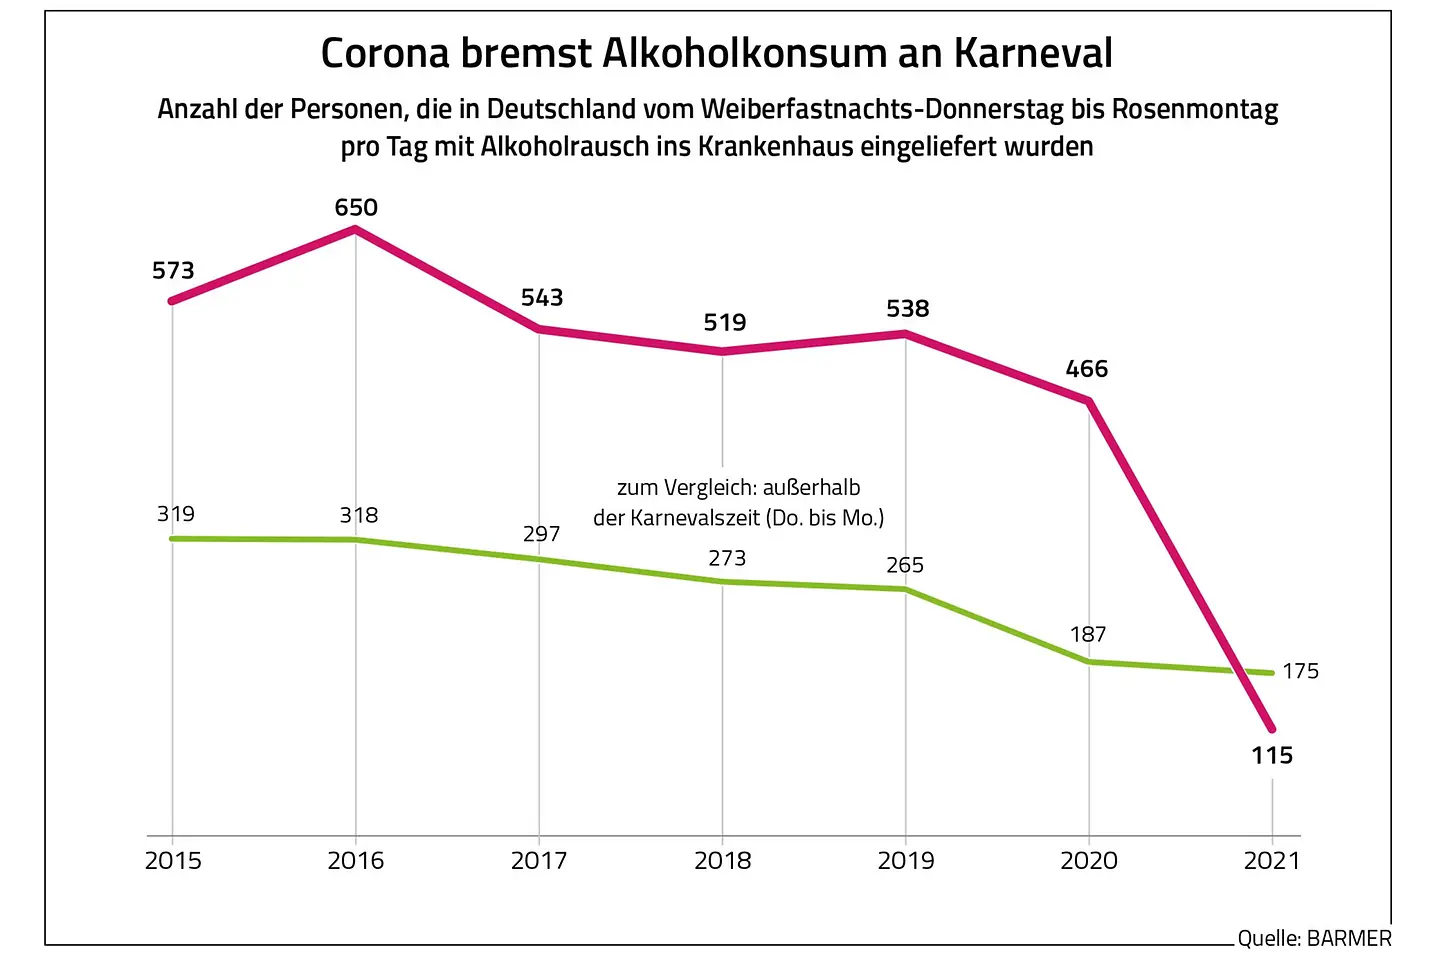 Die Grafik zeigt, dass der Alkoholkonsum an Karneval im Jahr 2021 unter dem Alkoholkonsum außerhalb der Karnevalszeit lag. 